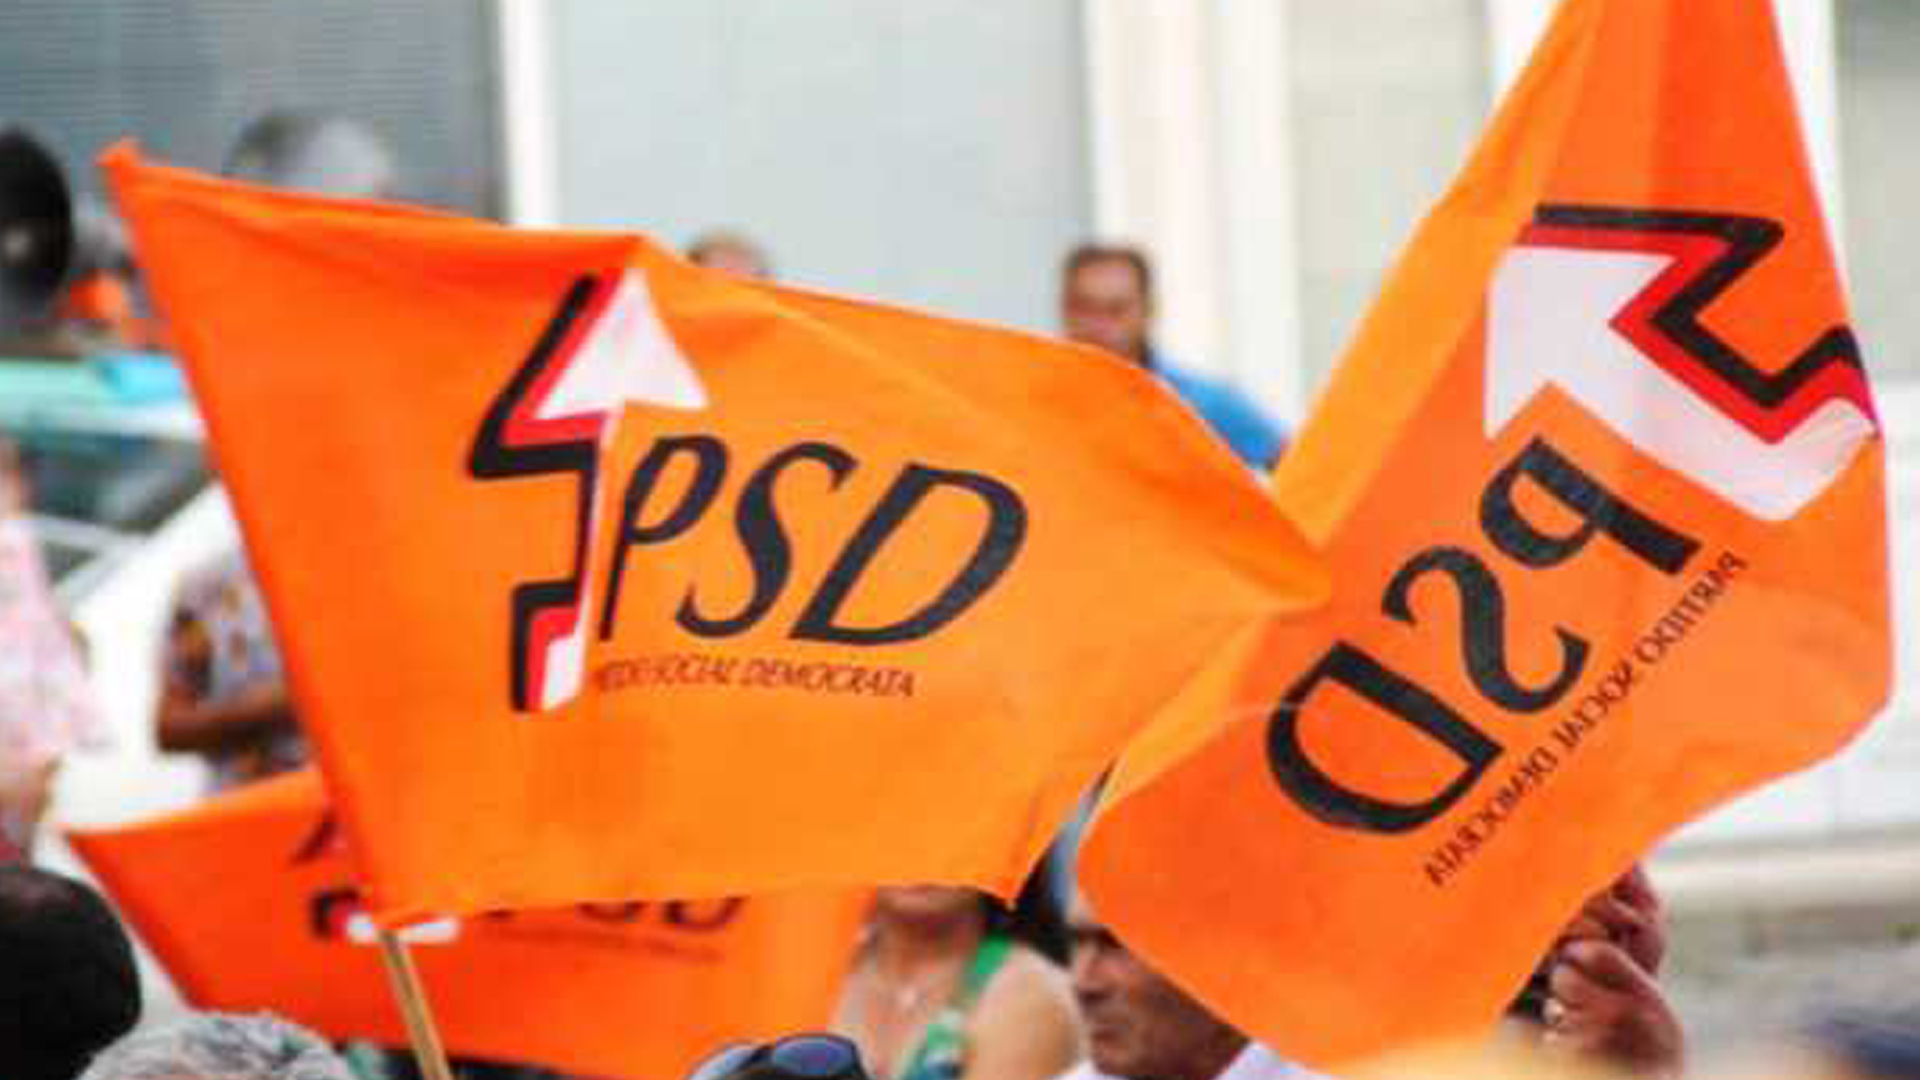 PSD acusa campanha de Moreira da Silva de postura “nociva”